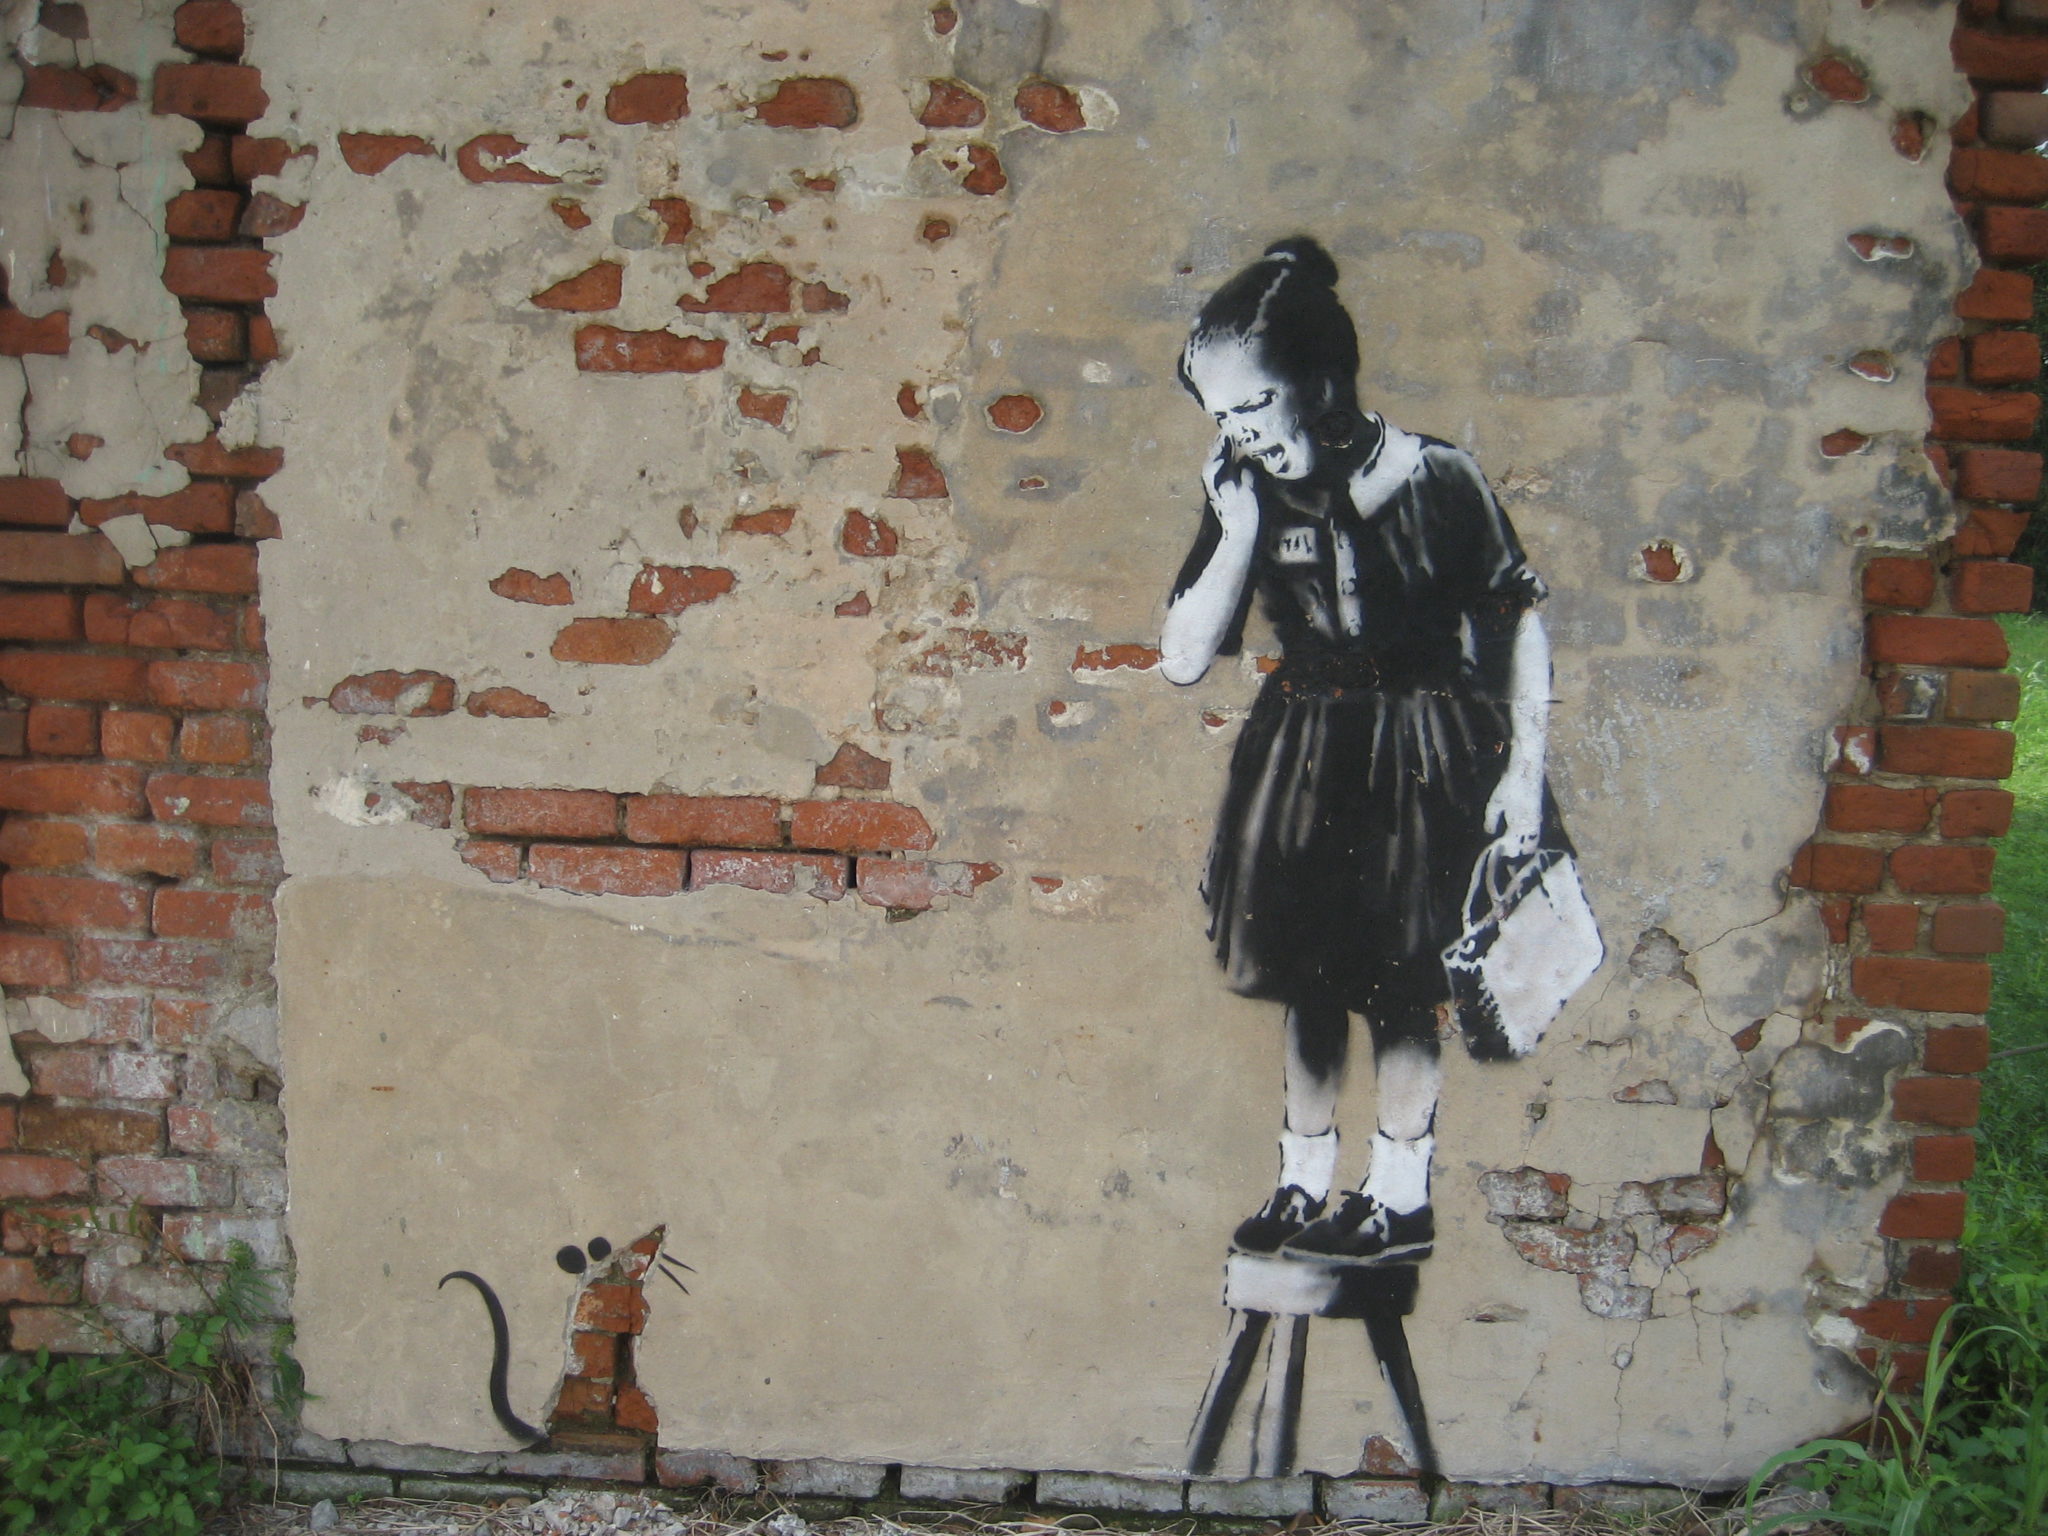 banksy ratgirl - et af hans dyreste kunstværker